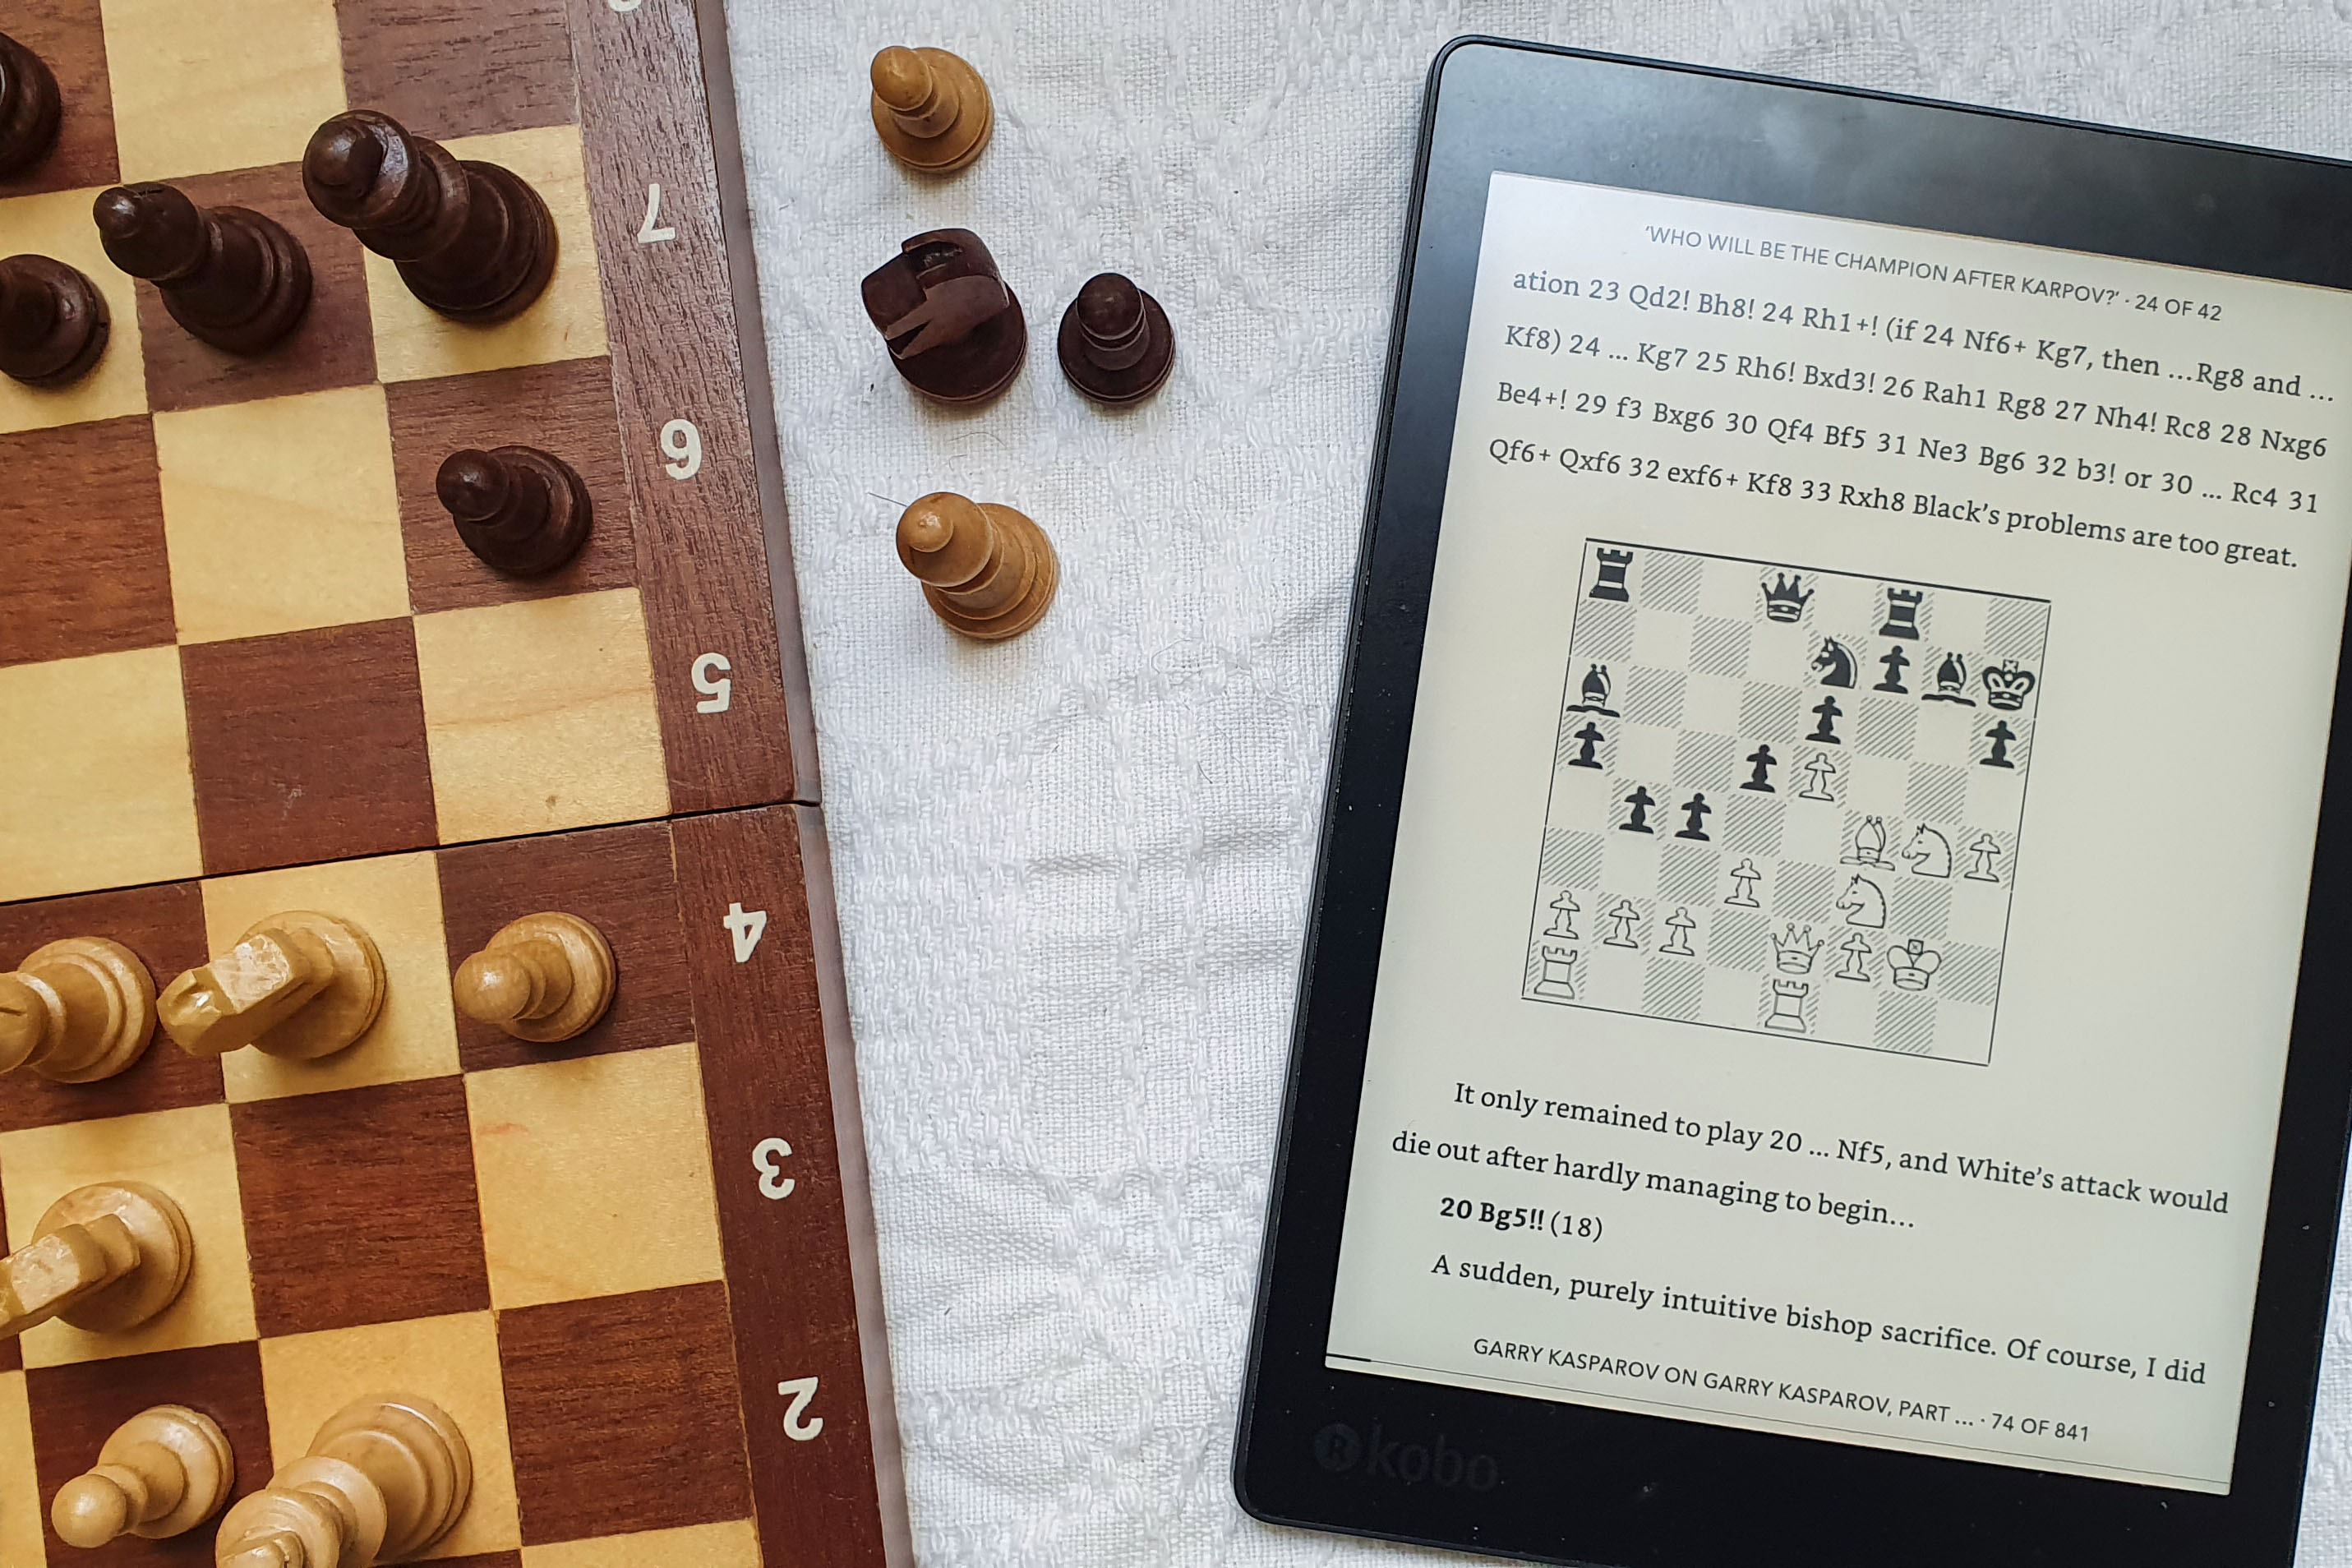 The Vienna Game C23-C29 Chess Training Program